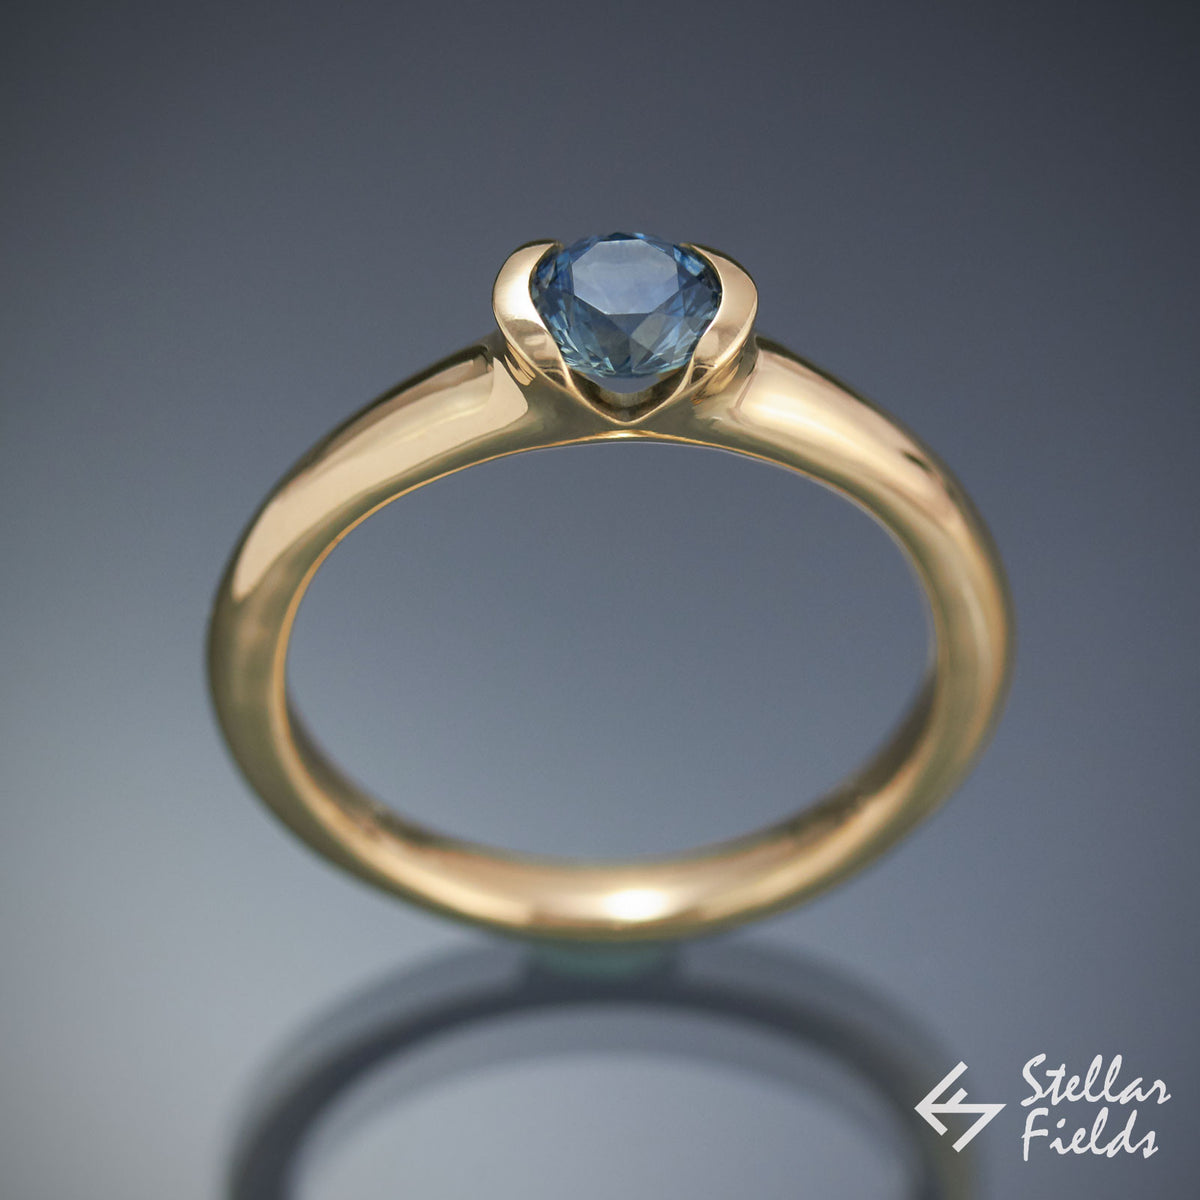 Blue Montana Sapphire Semi Bezel Engagement Ring Stellar Fields